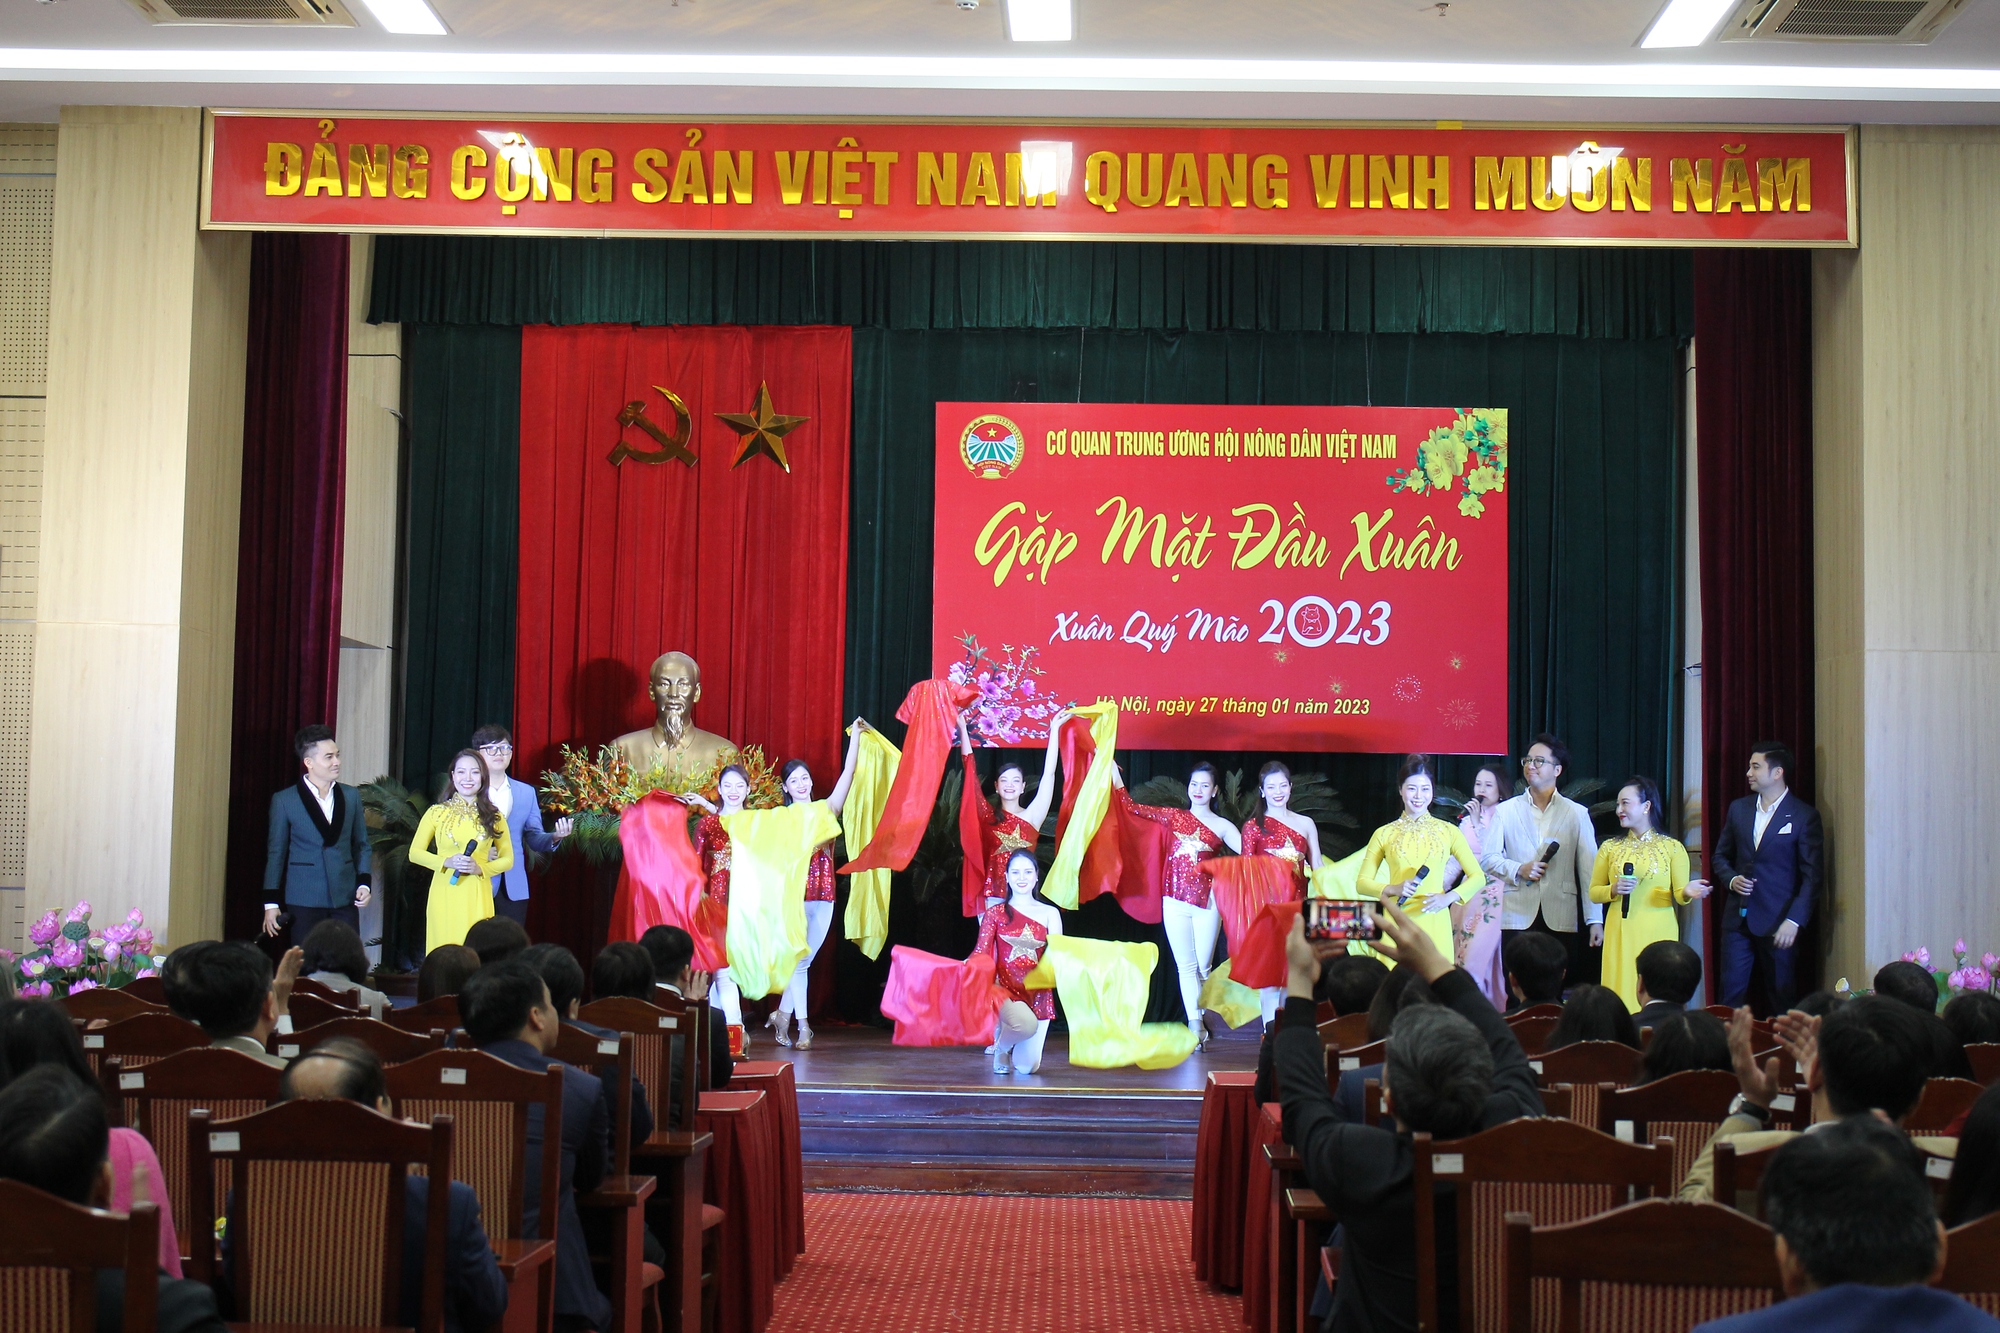 Hội Nông dân Việt Nam gặp mặt đầu Xuân Quý Mão 2023 - Ảnh 3.